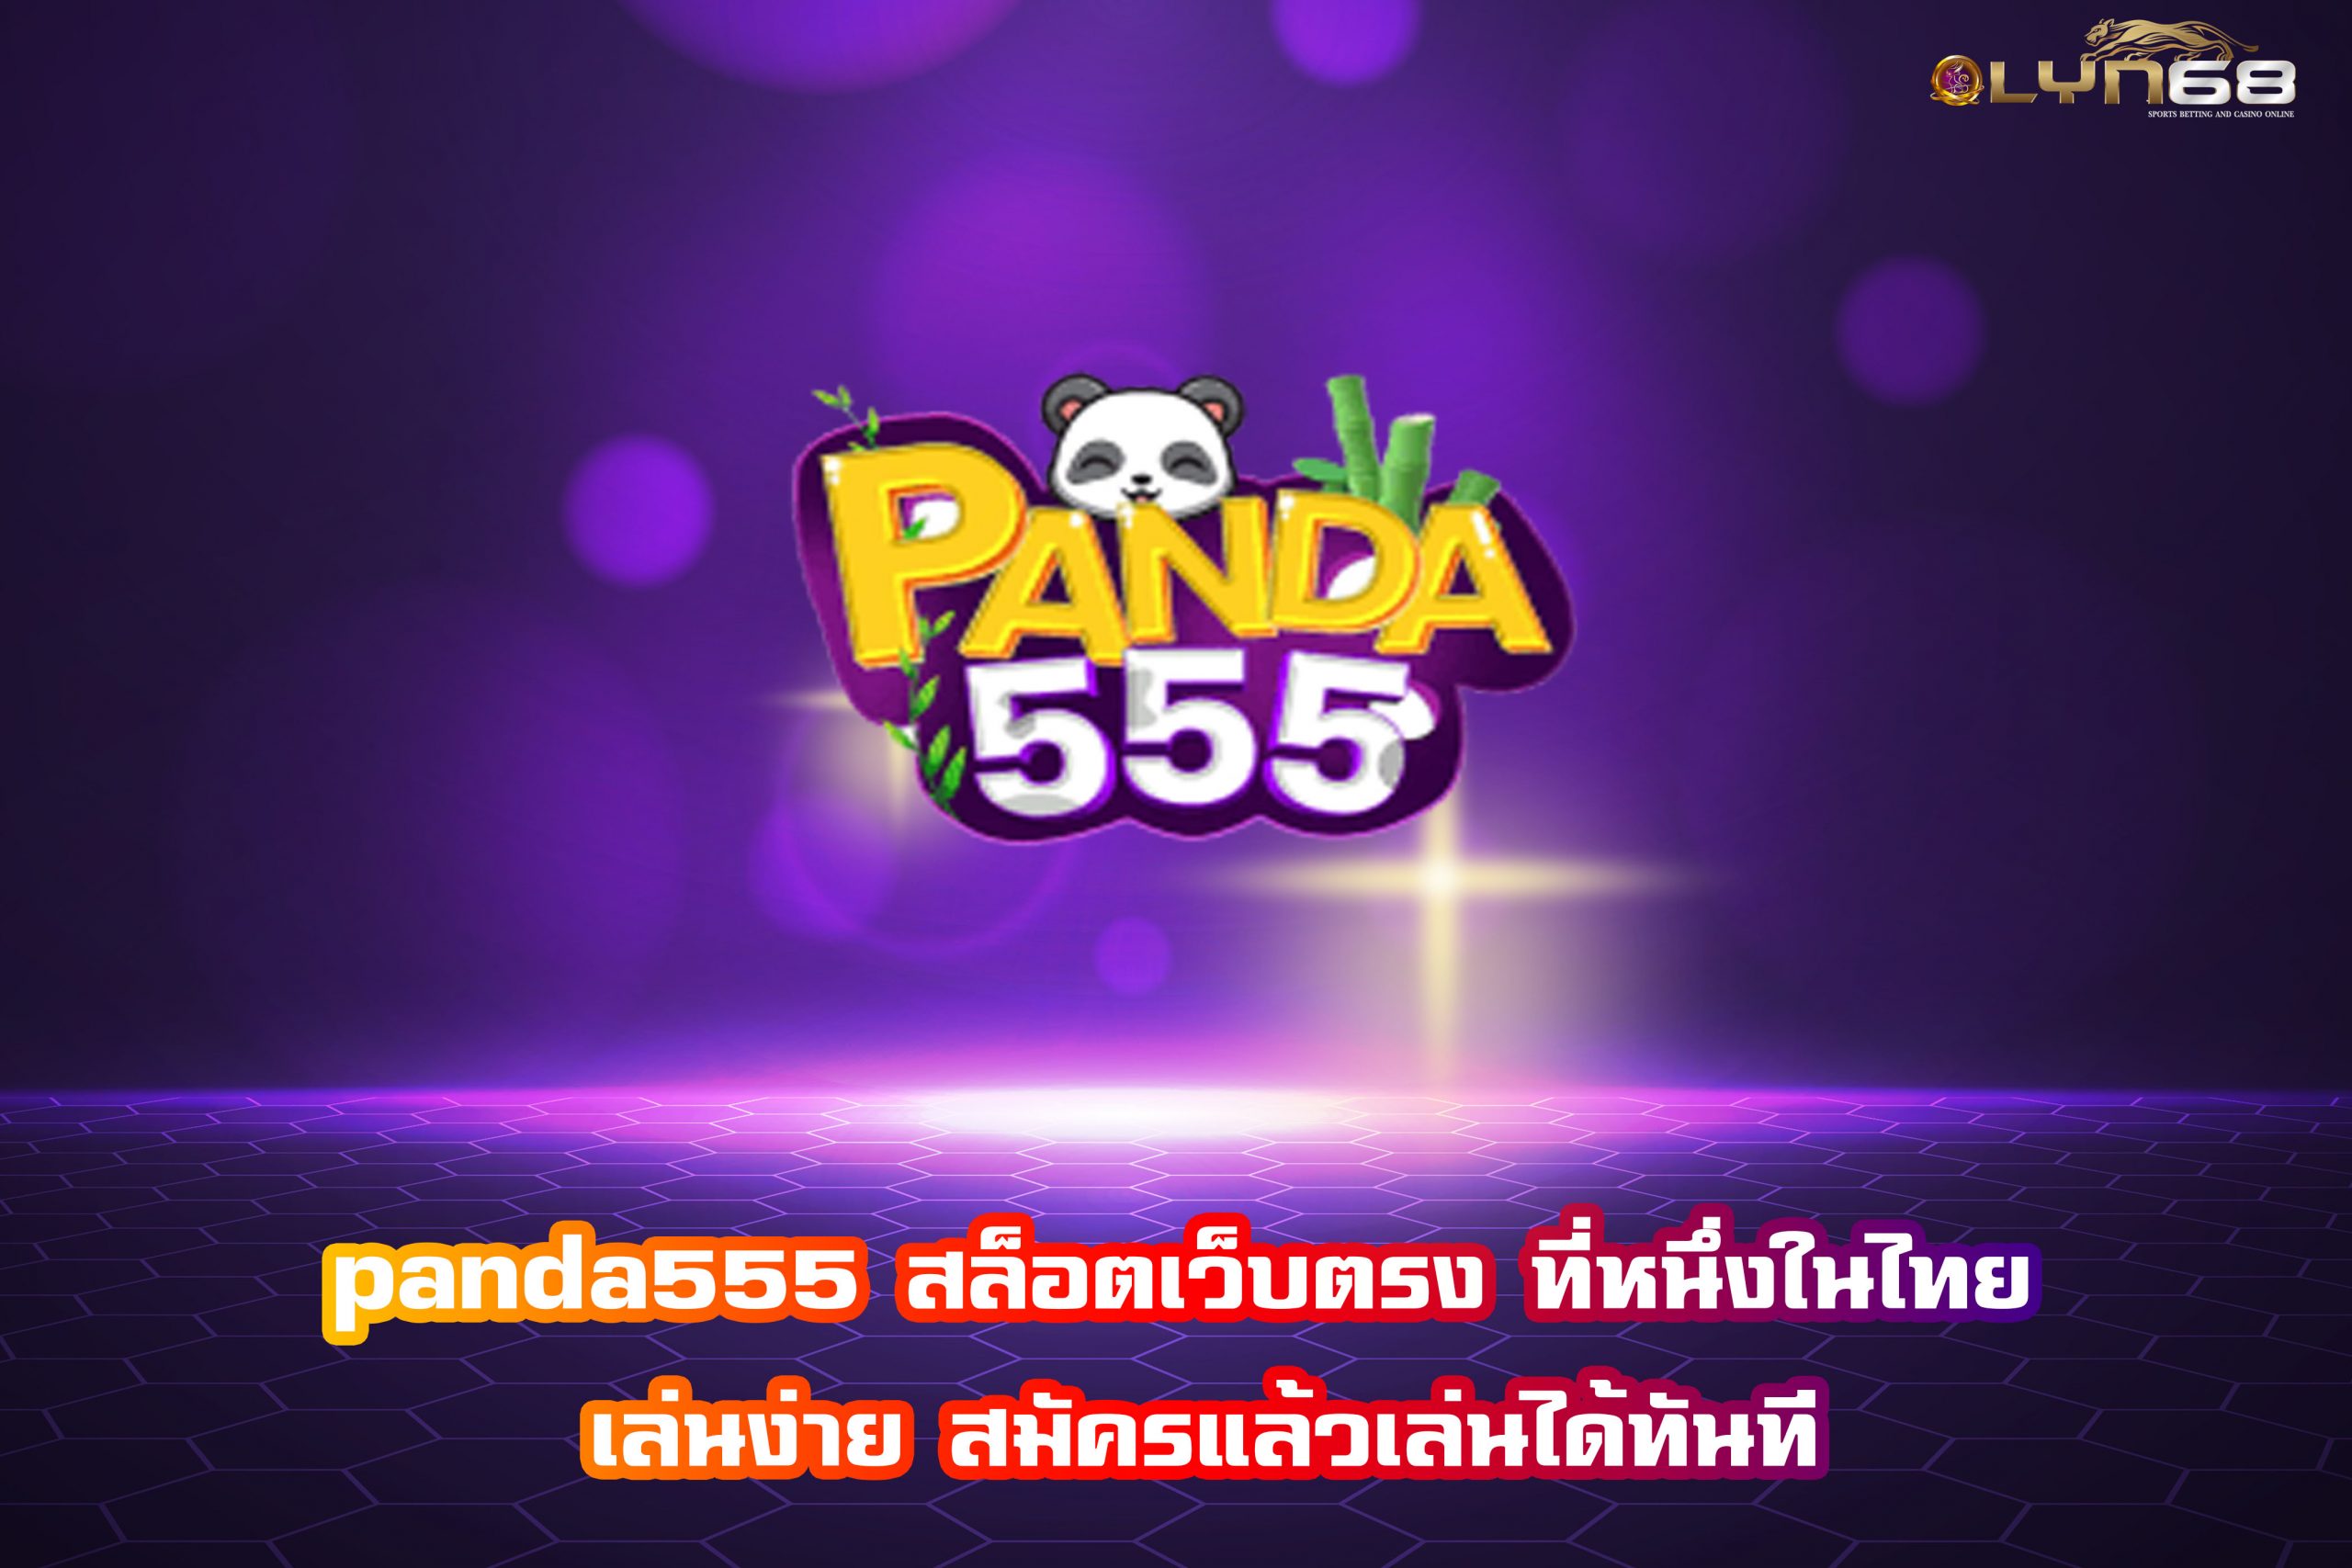 panda555 สล็อตเว็บตรง ที่หนึ่งในไทย เล่นง่าย สมัครแล้วเล่นได้ทันที